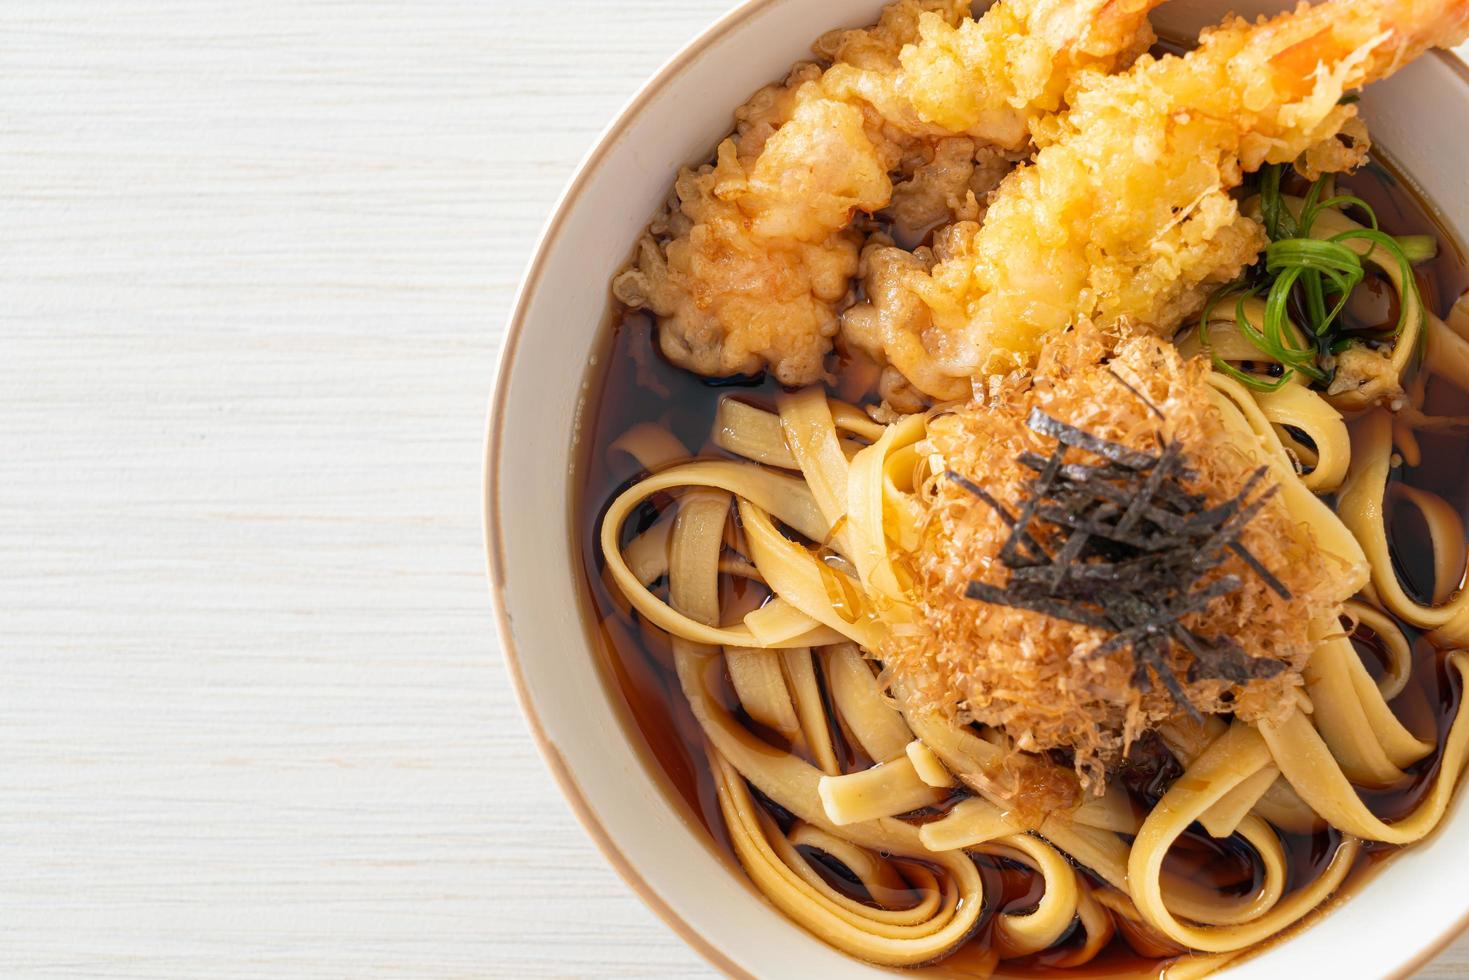 Japanese ramen noodles with shrimps tempura photo